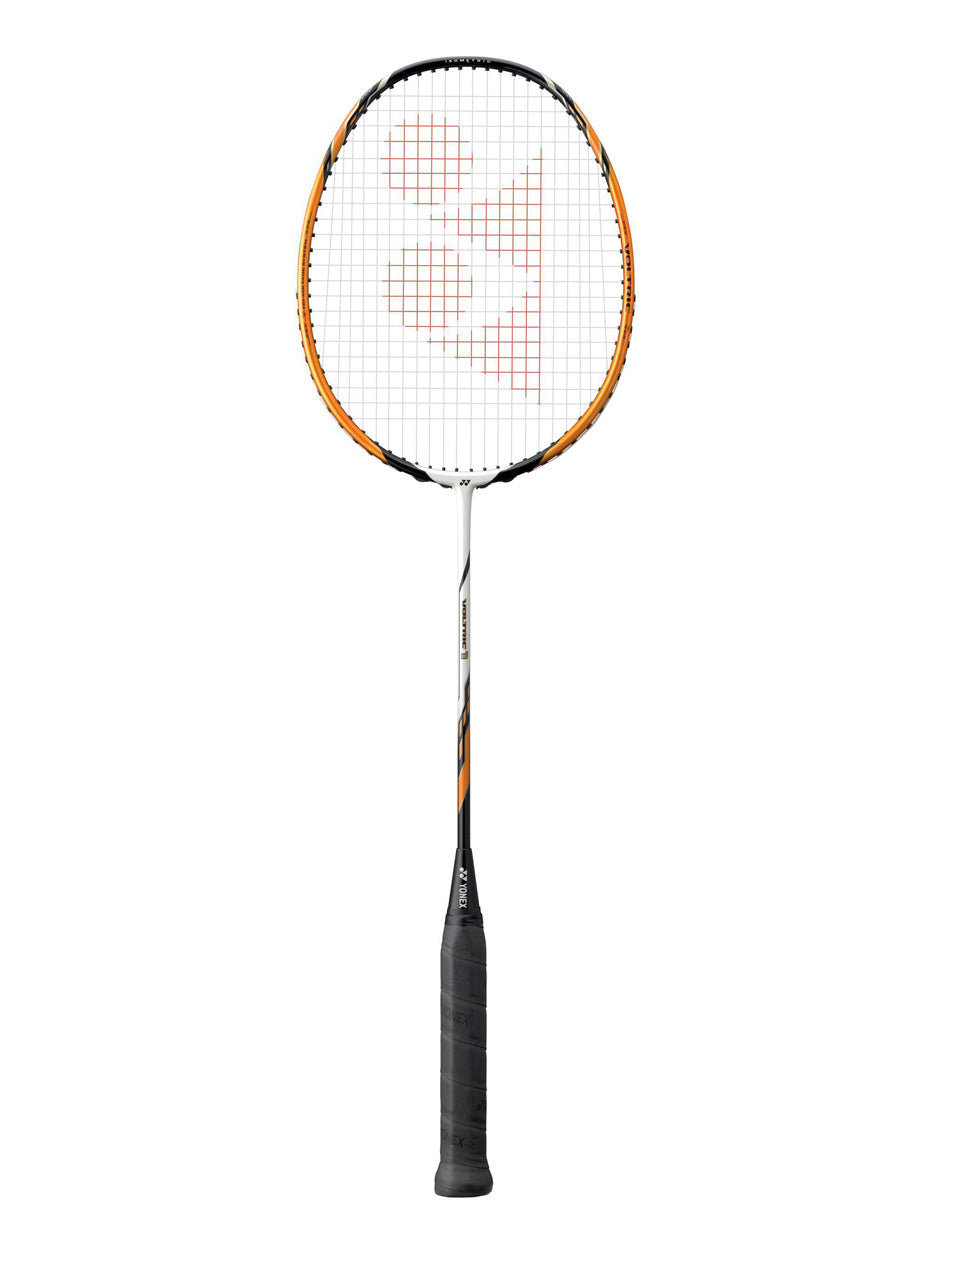 White Gold Badminton Racket